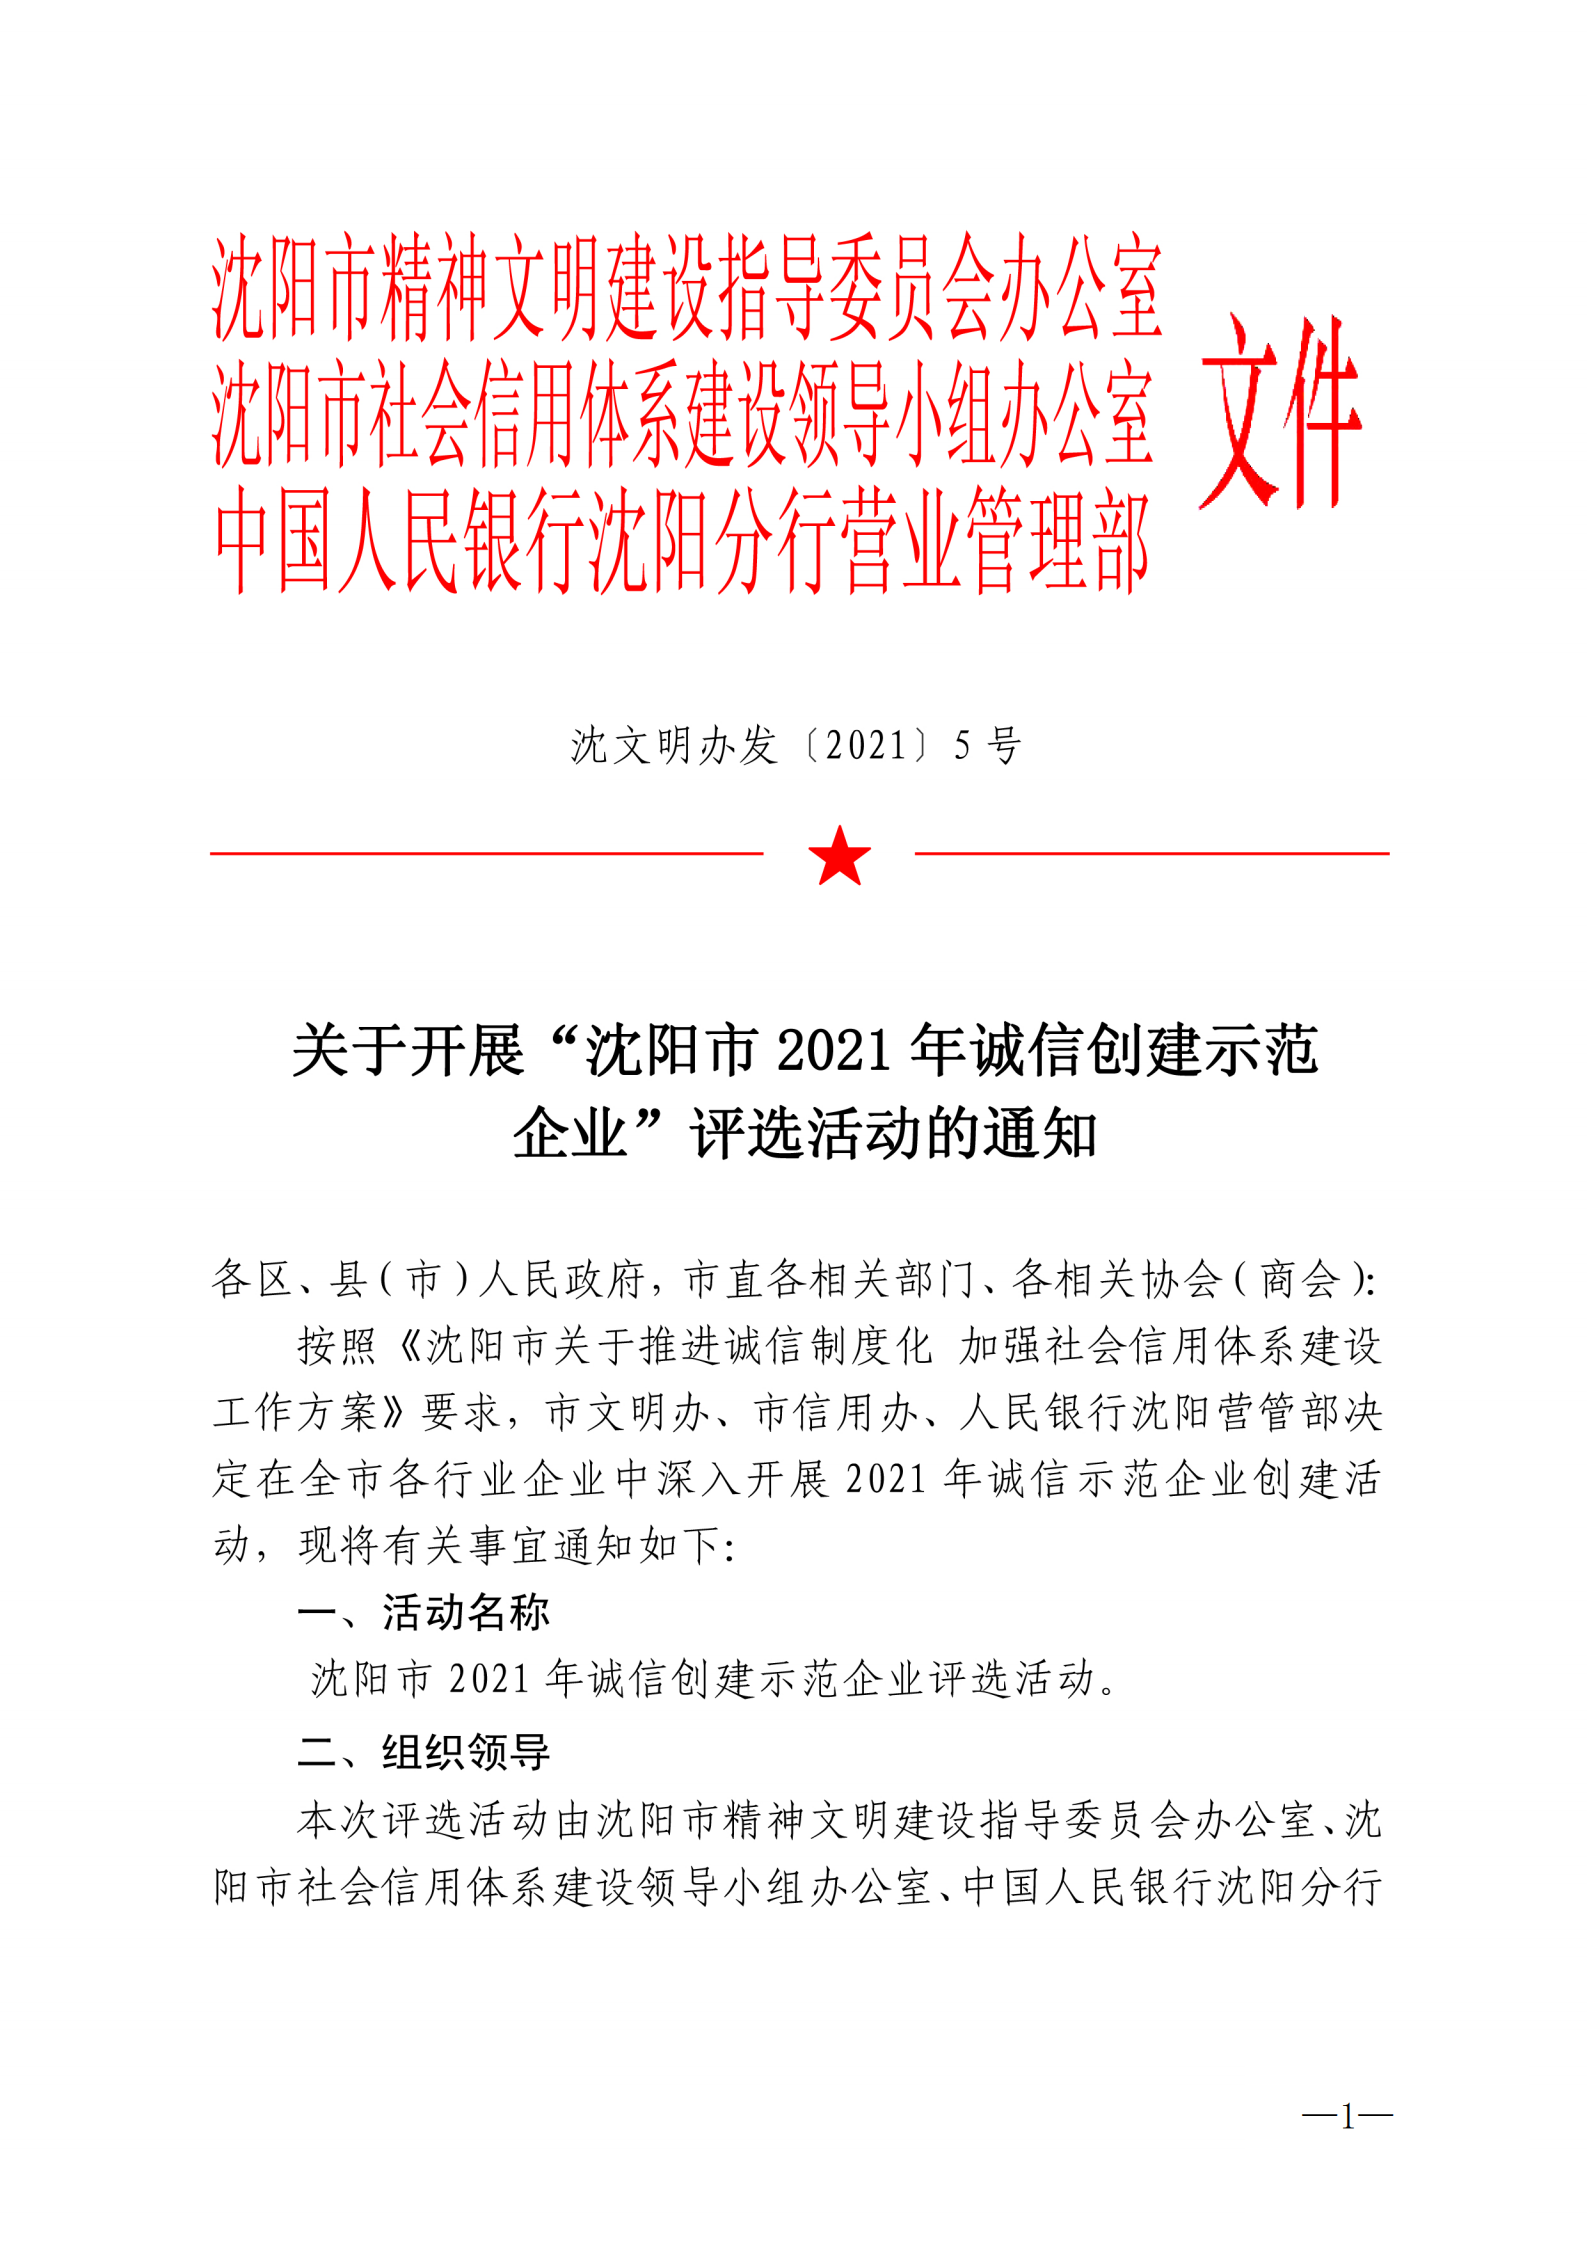 关于开展“沈阳市2021年诚信创建示范企业“评选活动的通知